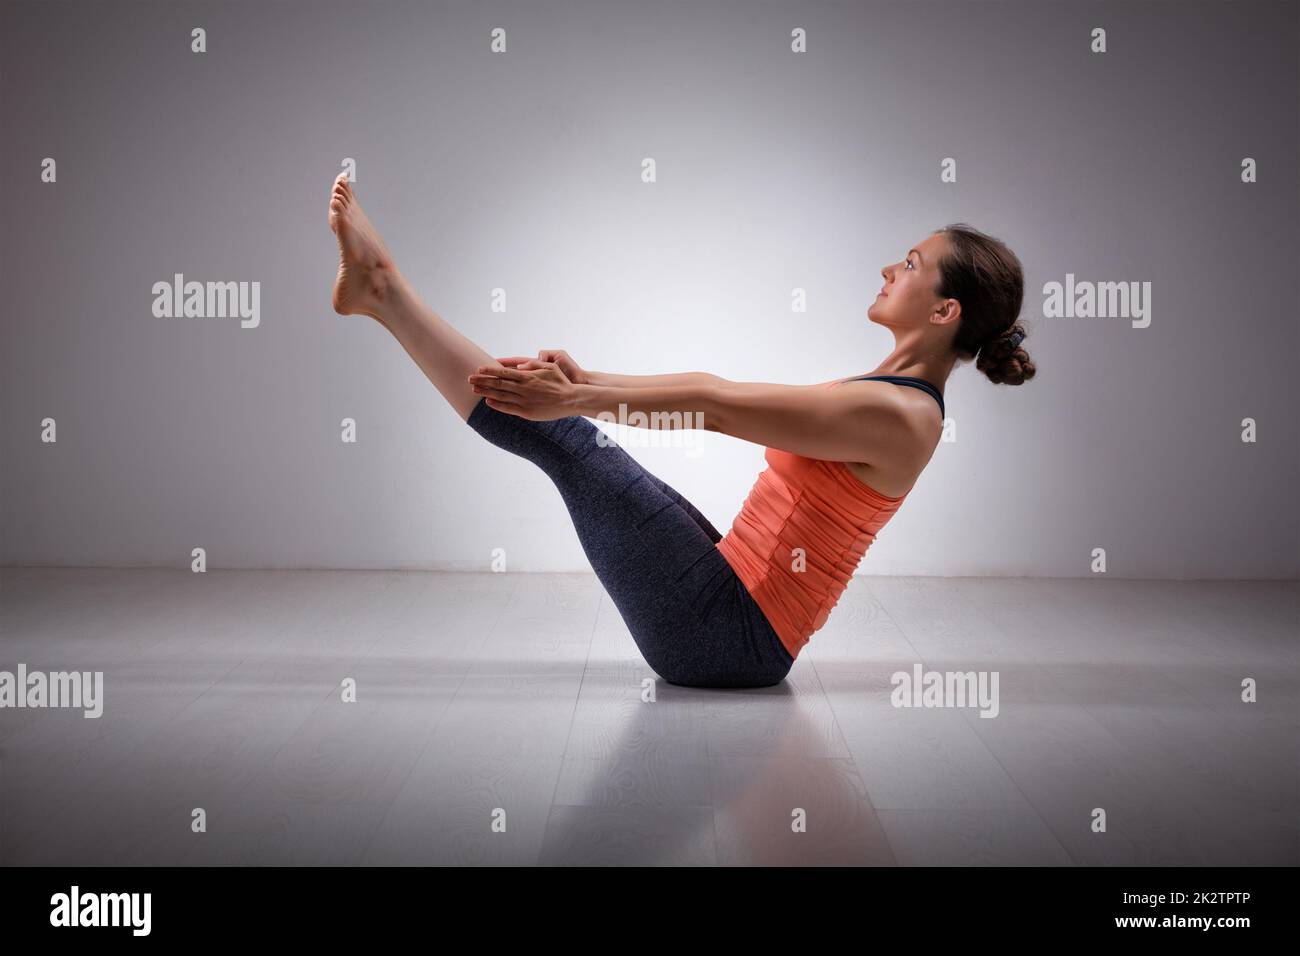 Femme pratique le yoga asana navasana plénière Banque D'Images